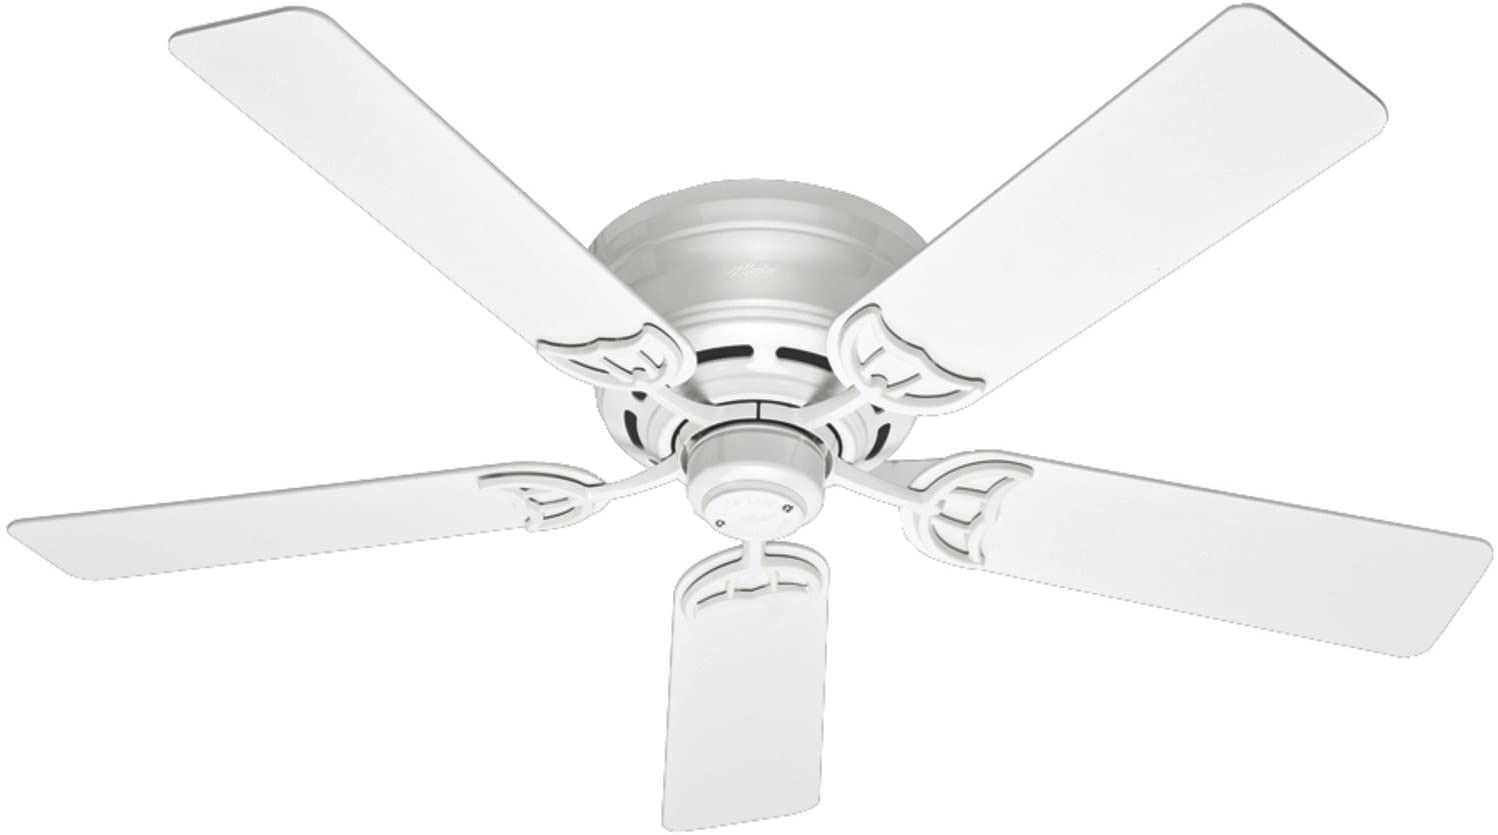 Low Profile III 53069 52-Inch Ceiling Fan